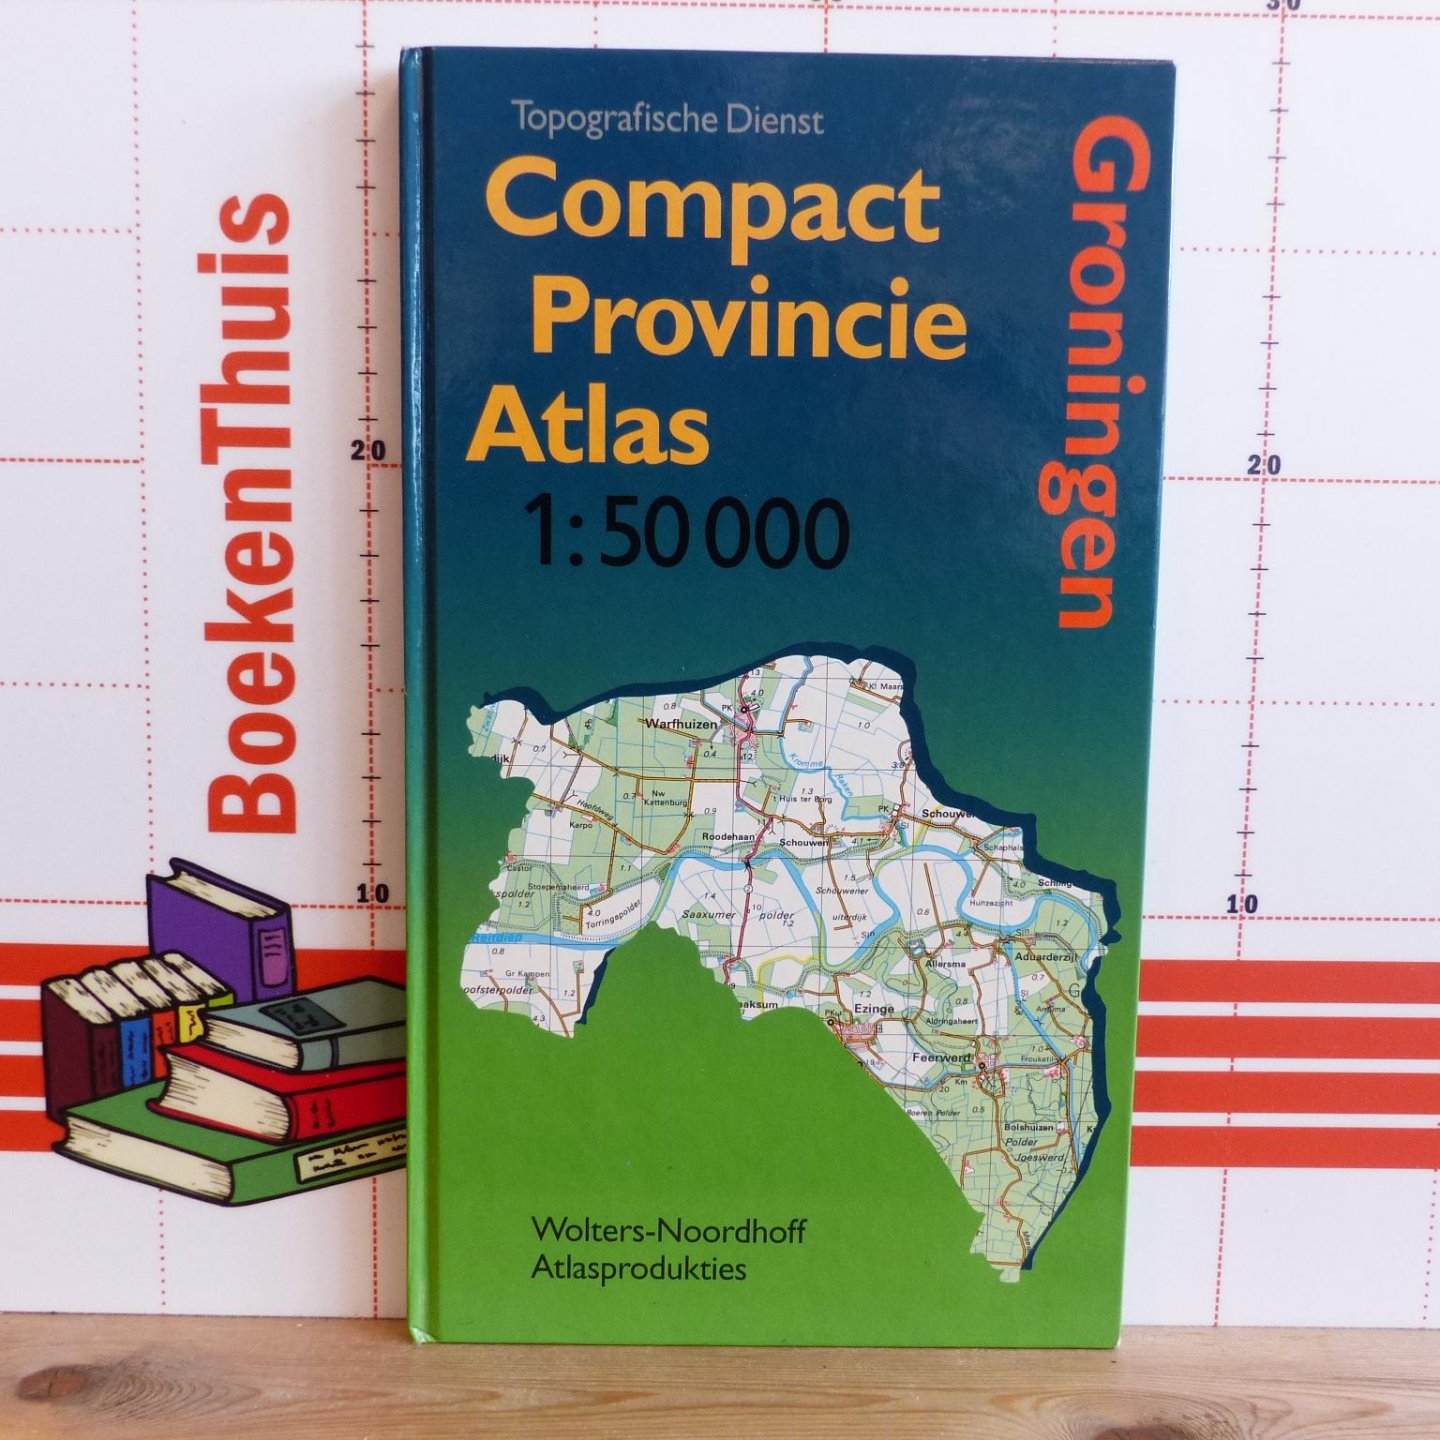 Topografische Dienst - compact provincie atlas Groningen